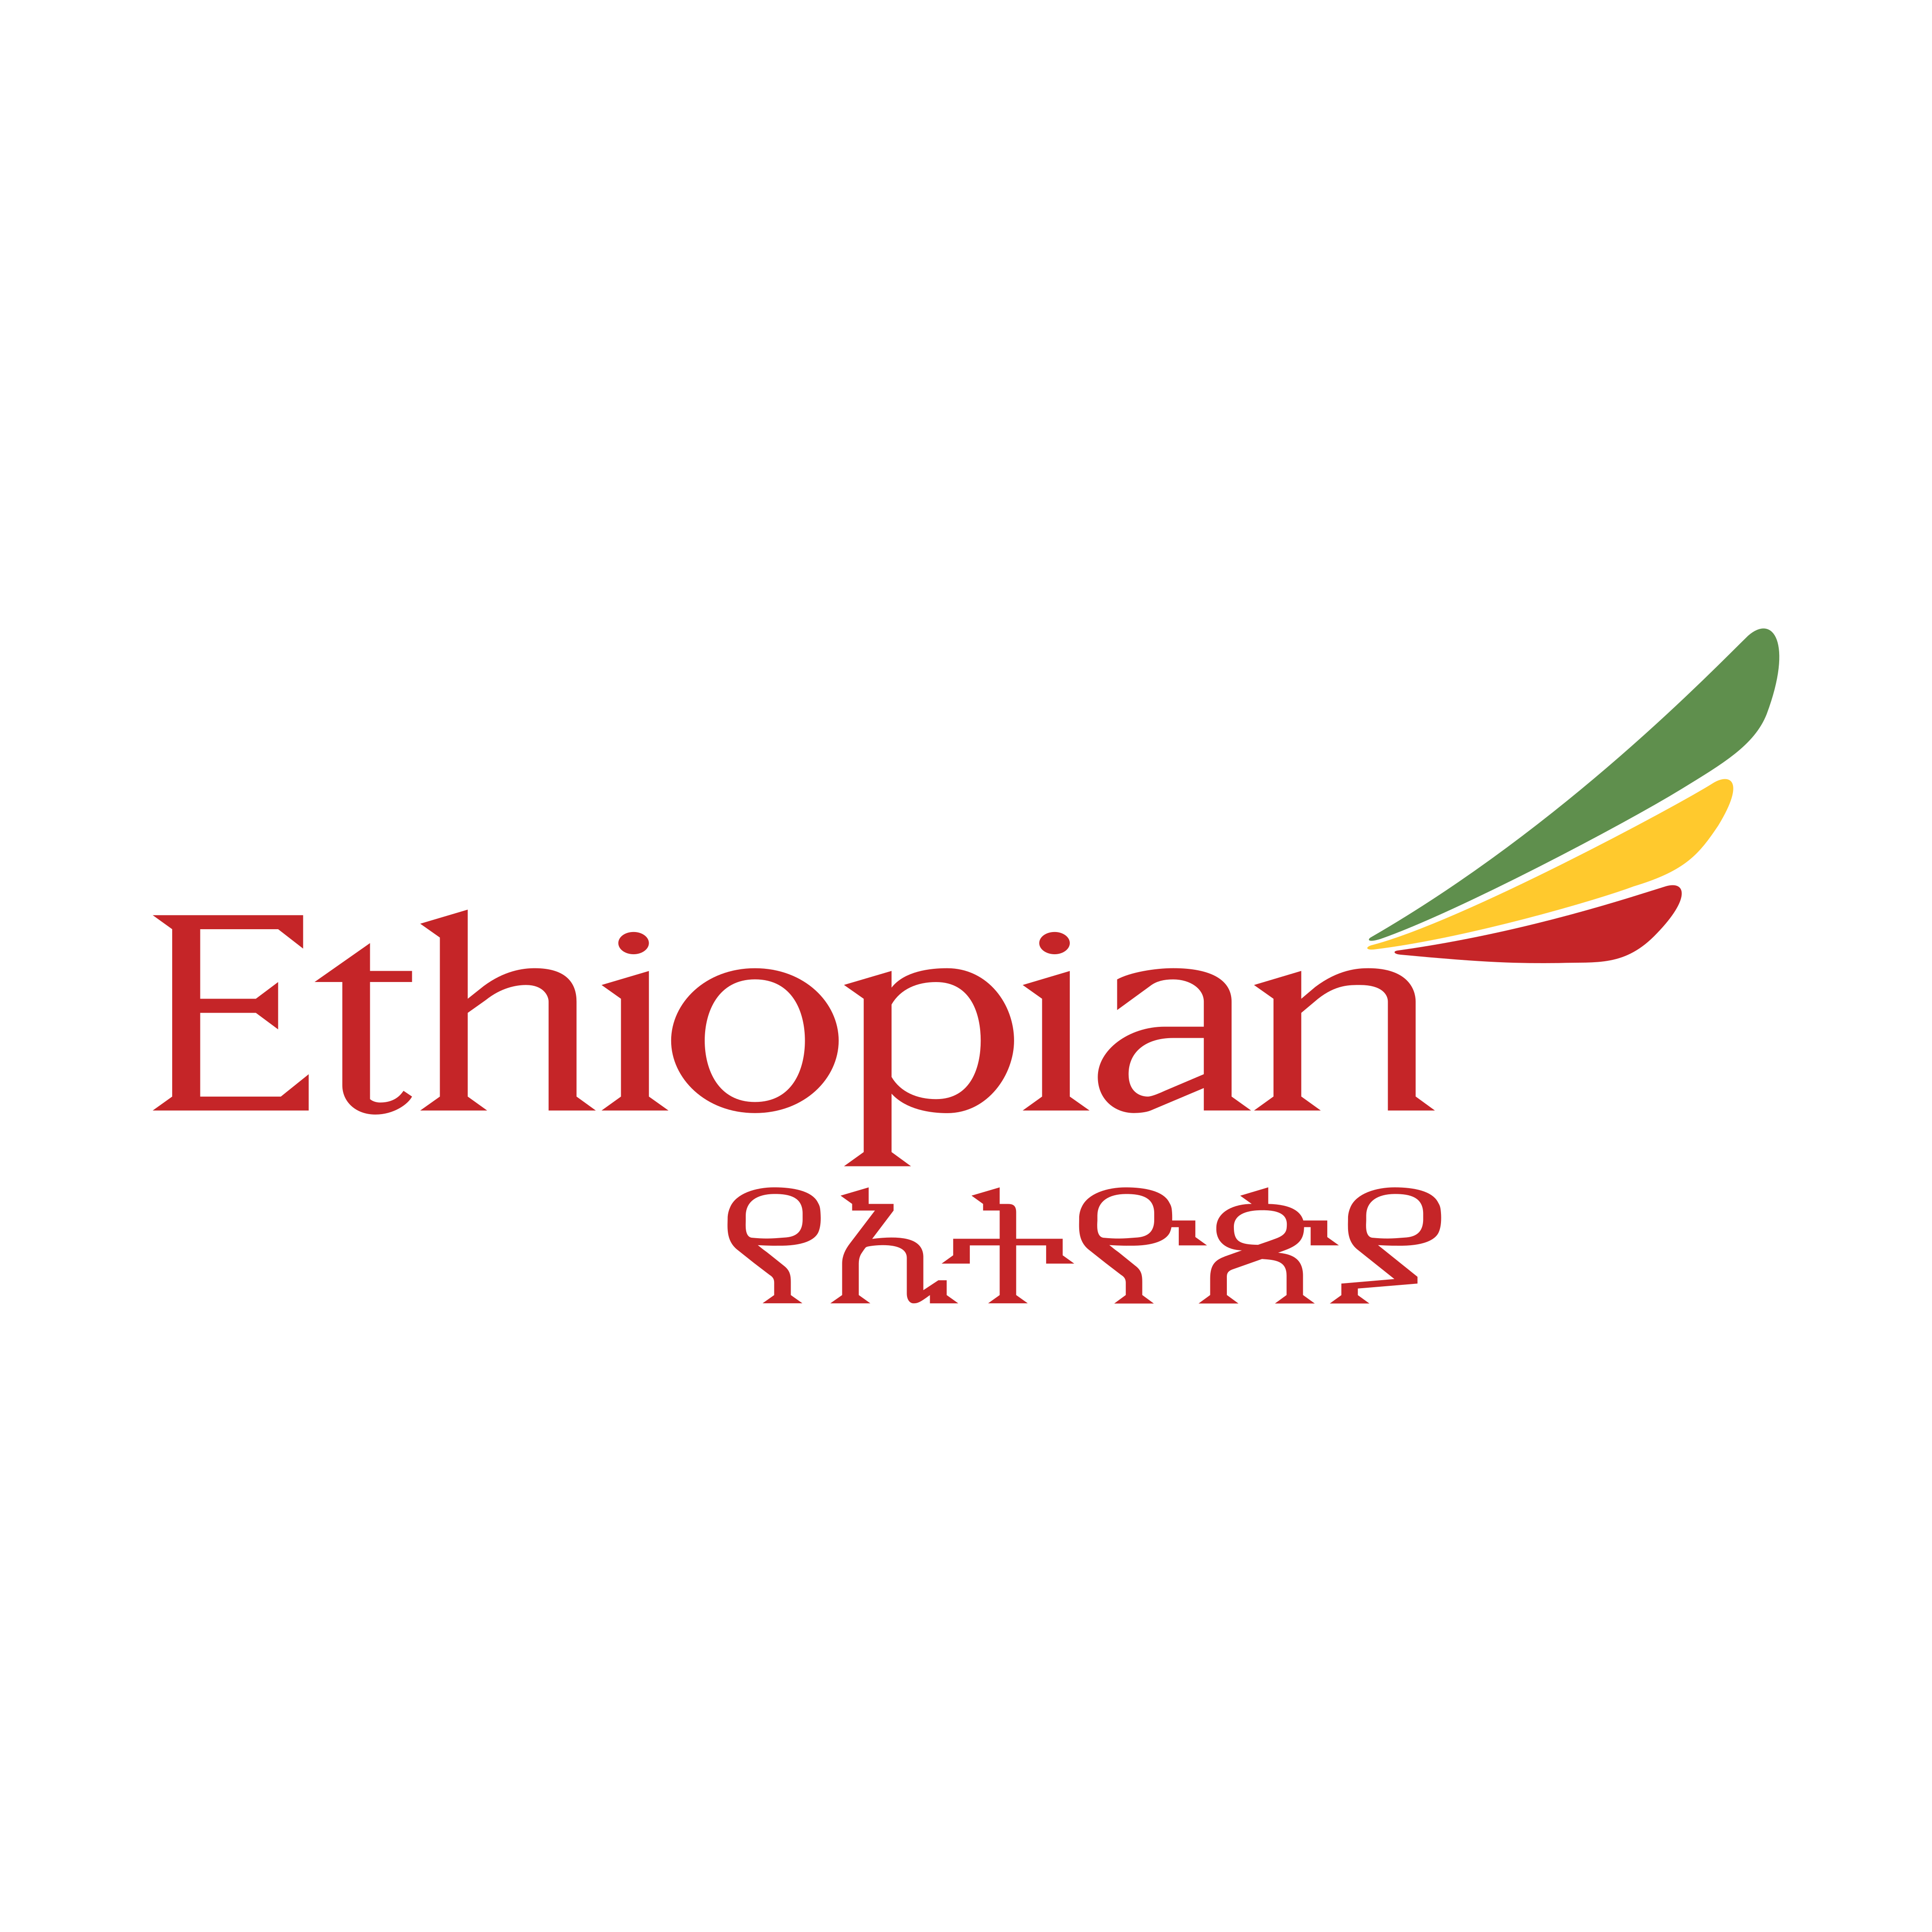 ethiopian airlines logo 0 - Ethiopian Airlines Logo